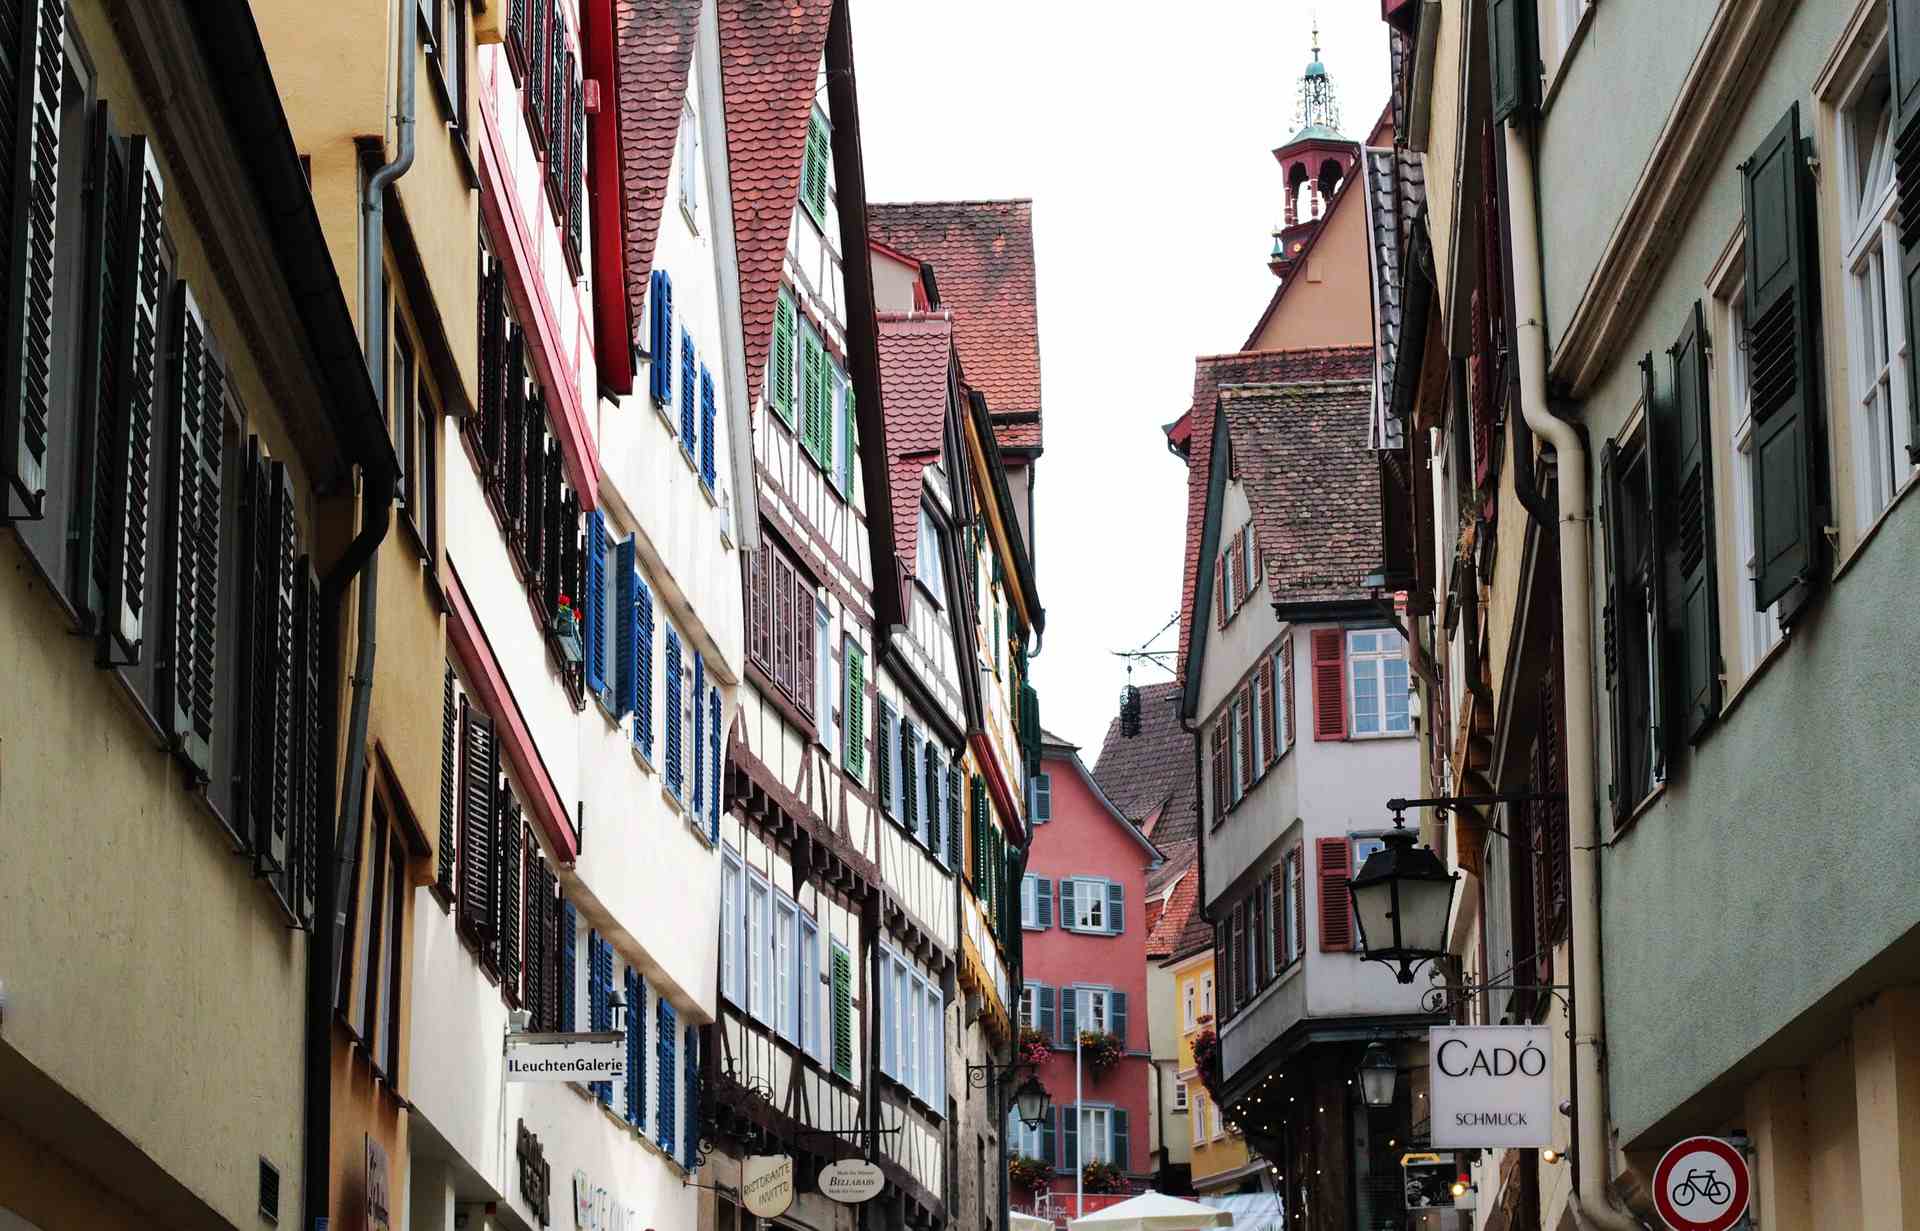 Ein Bild von einer Straße in Tübingen